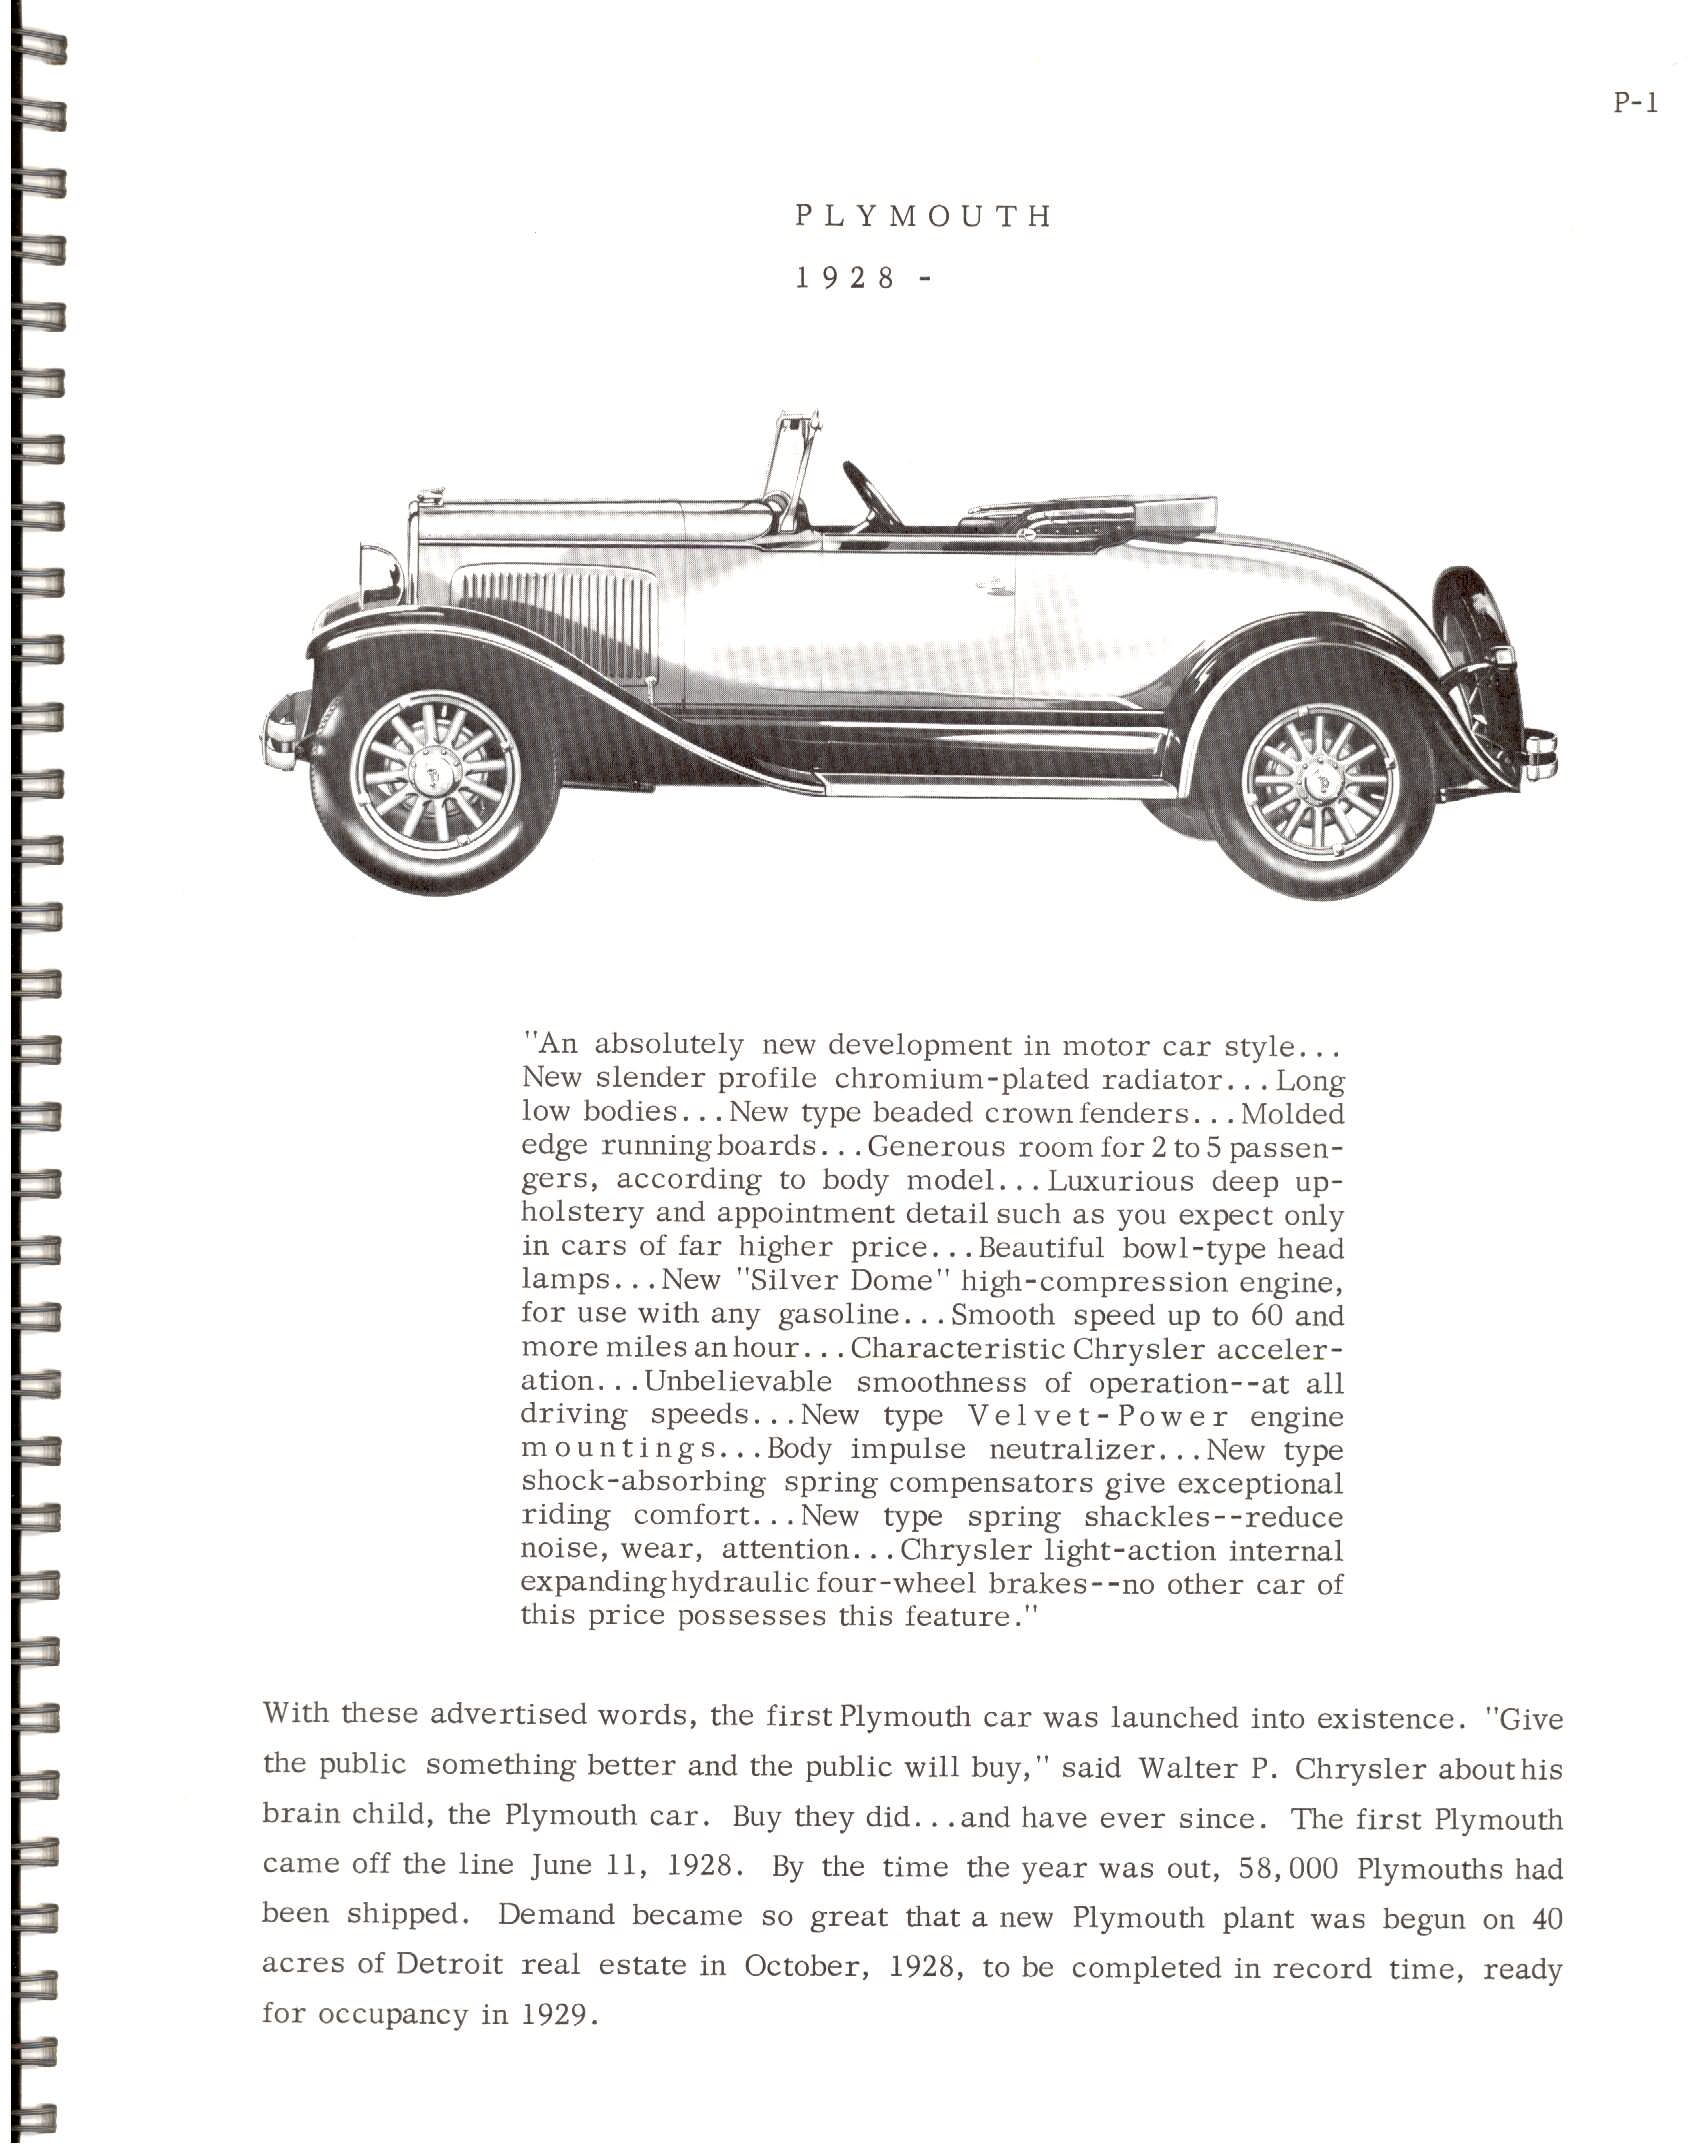 1966-History Of Chrysler Cars-P01